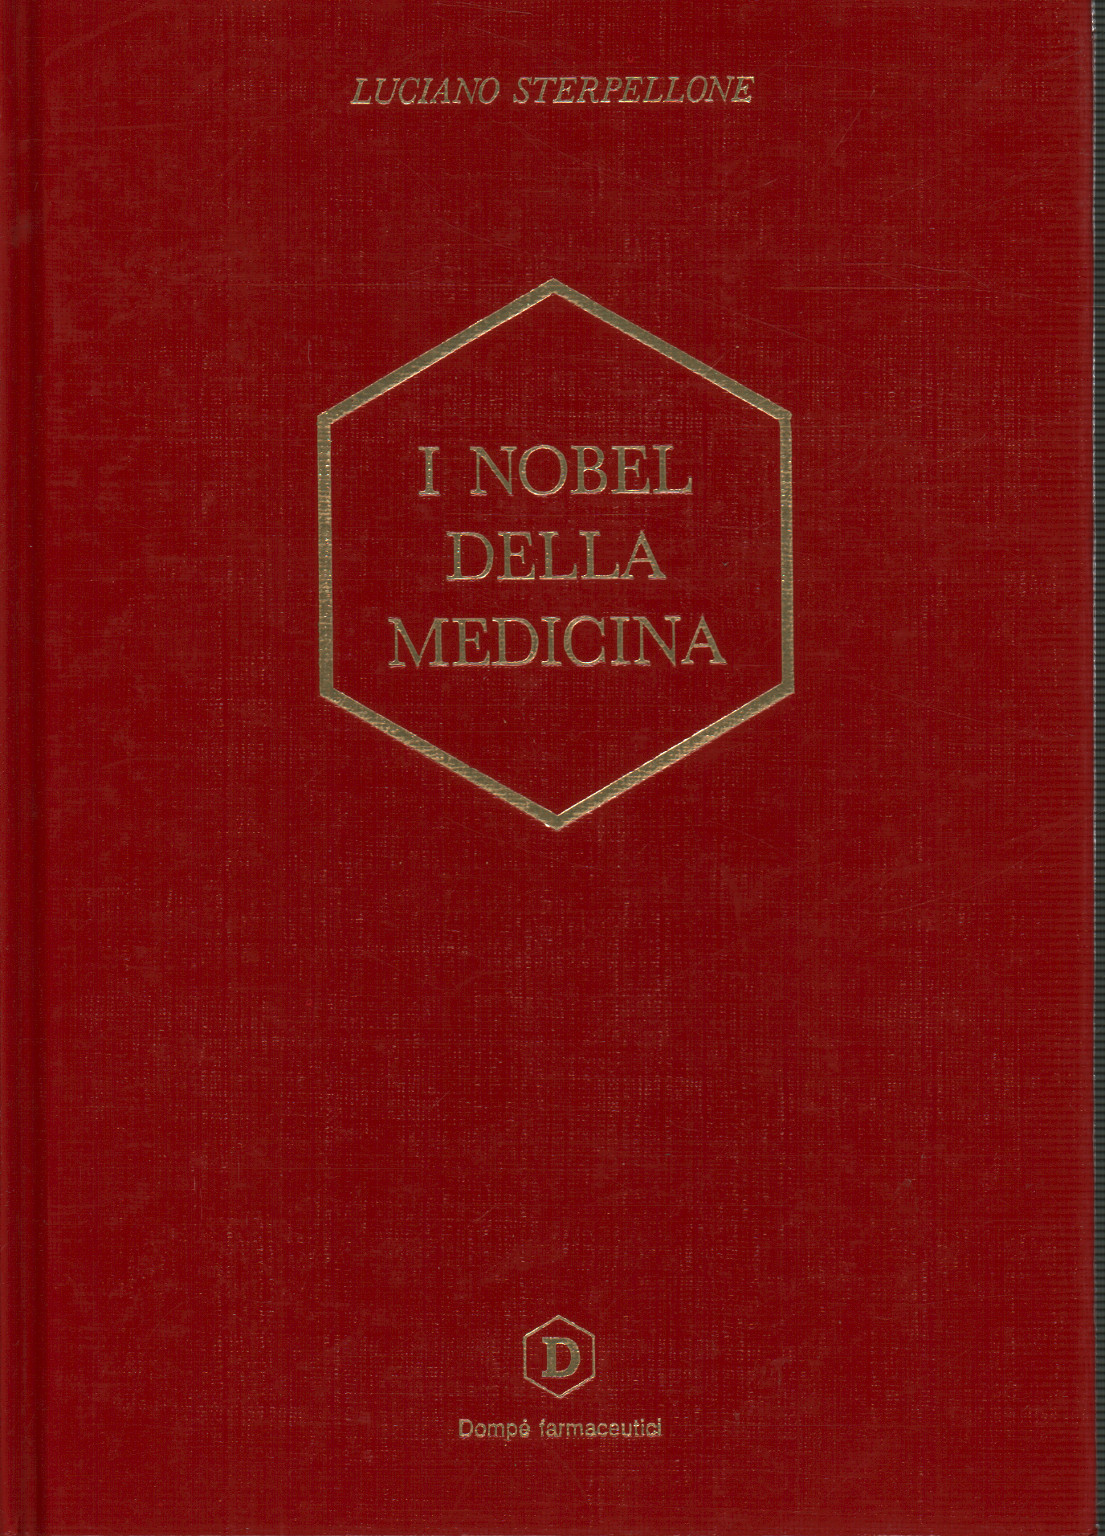 I Nobel della medicina (1901-1990), s.a.